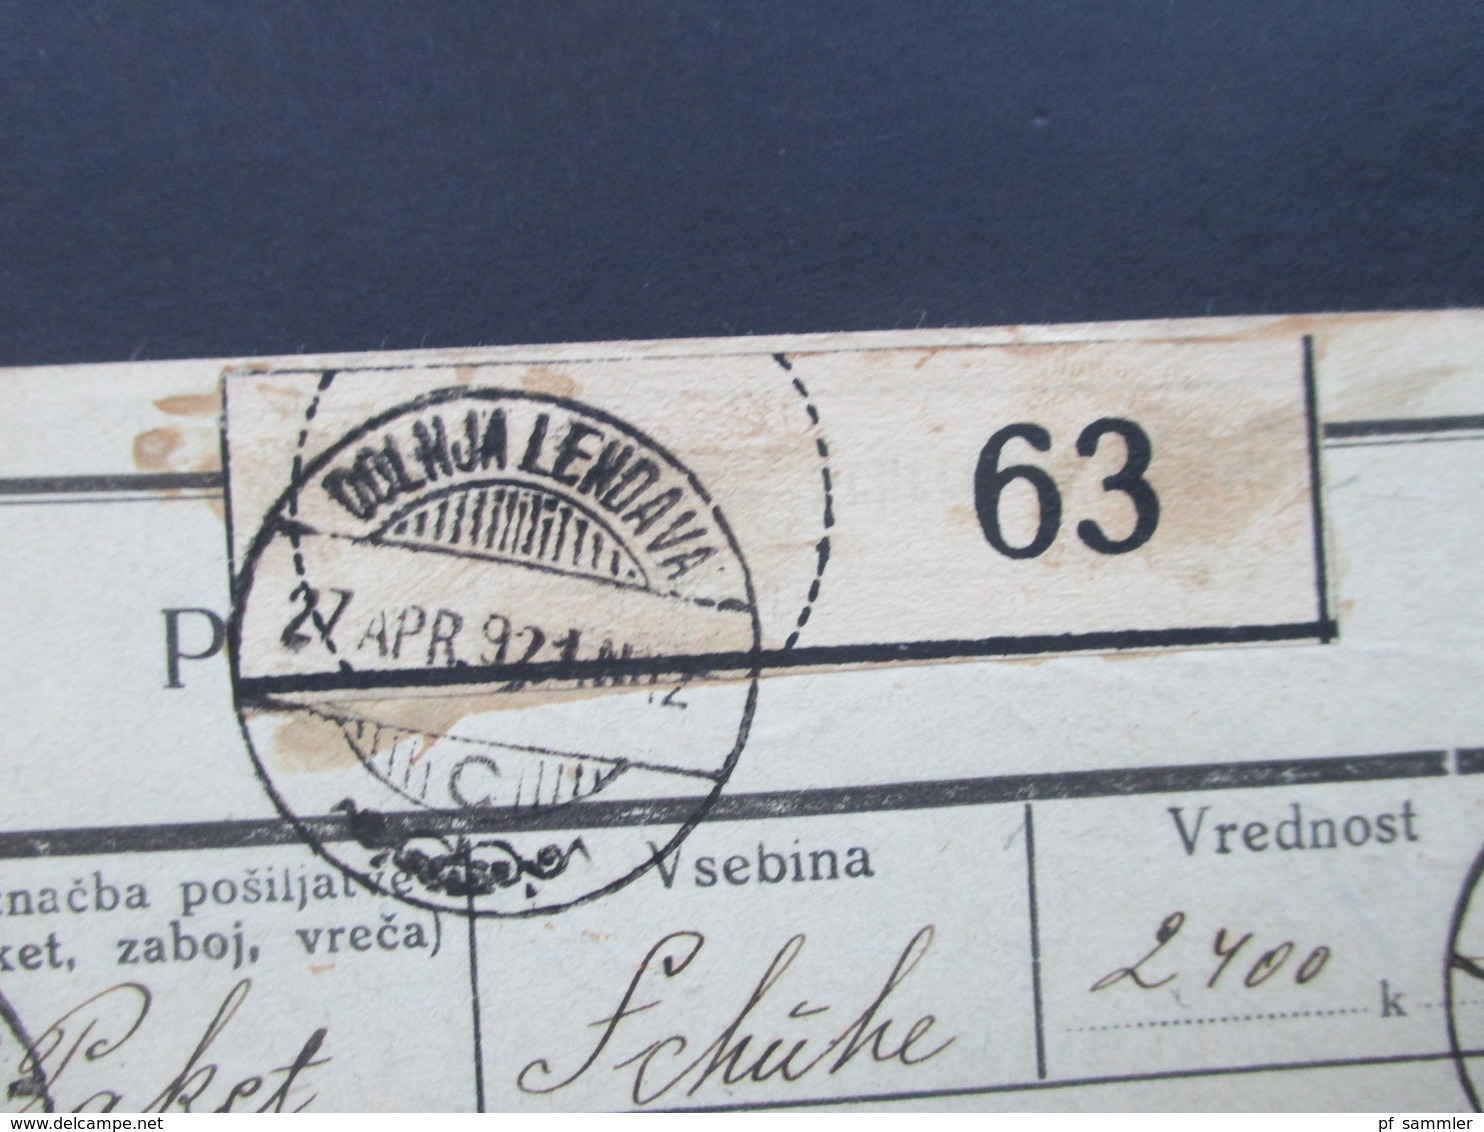 Jugoslawien SHS 1921 Paketkarten 24 Stück mit interessanten Frankaturen und Klebezettel und Stempel!